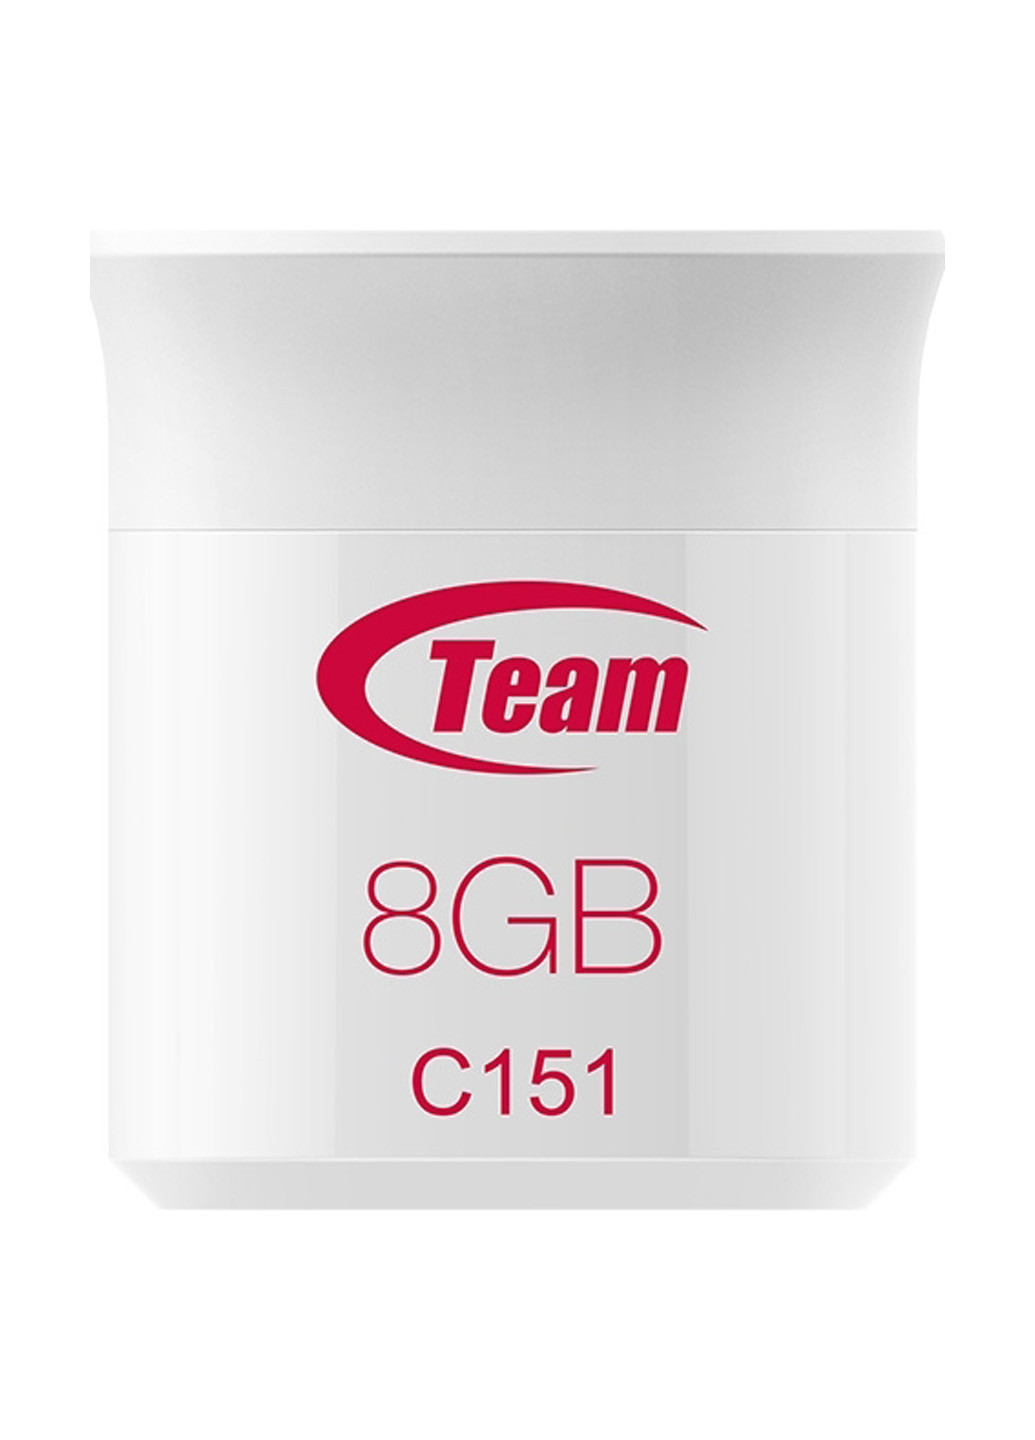 Флеш память USB C151 8GB Red (TC1518GR01) Team флеш память usb team c151 8gb red (tc1518gr01) (134201740)